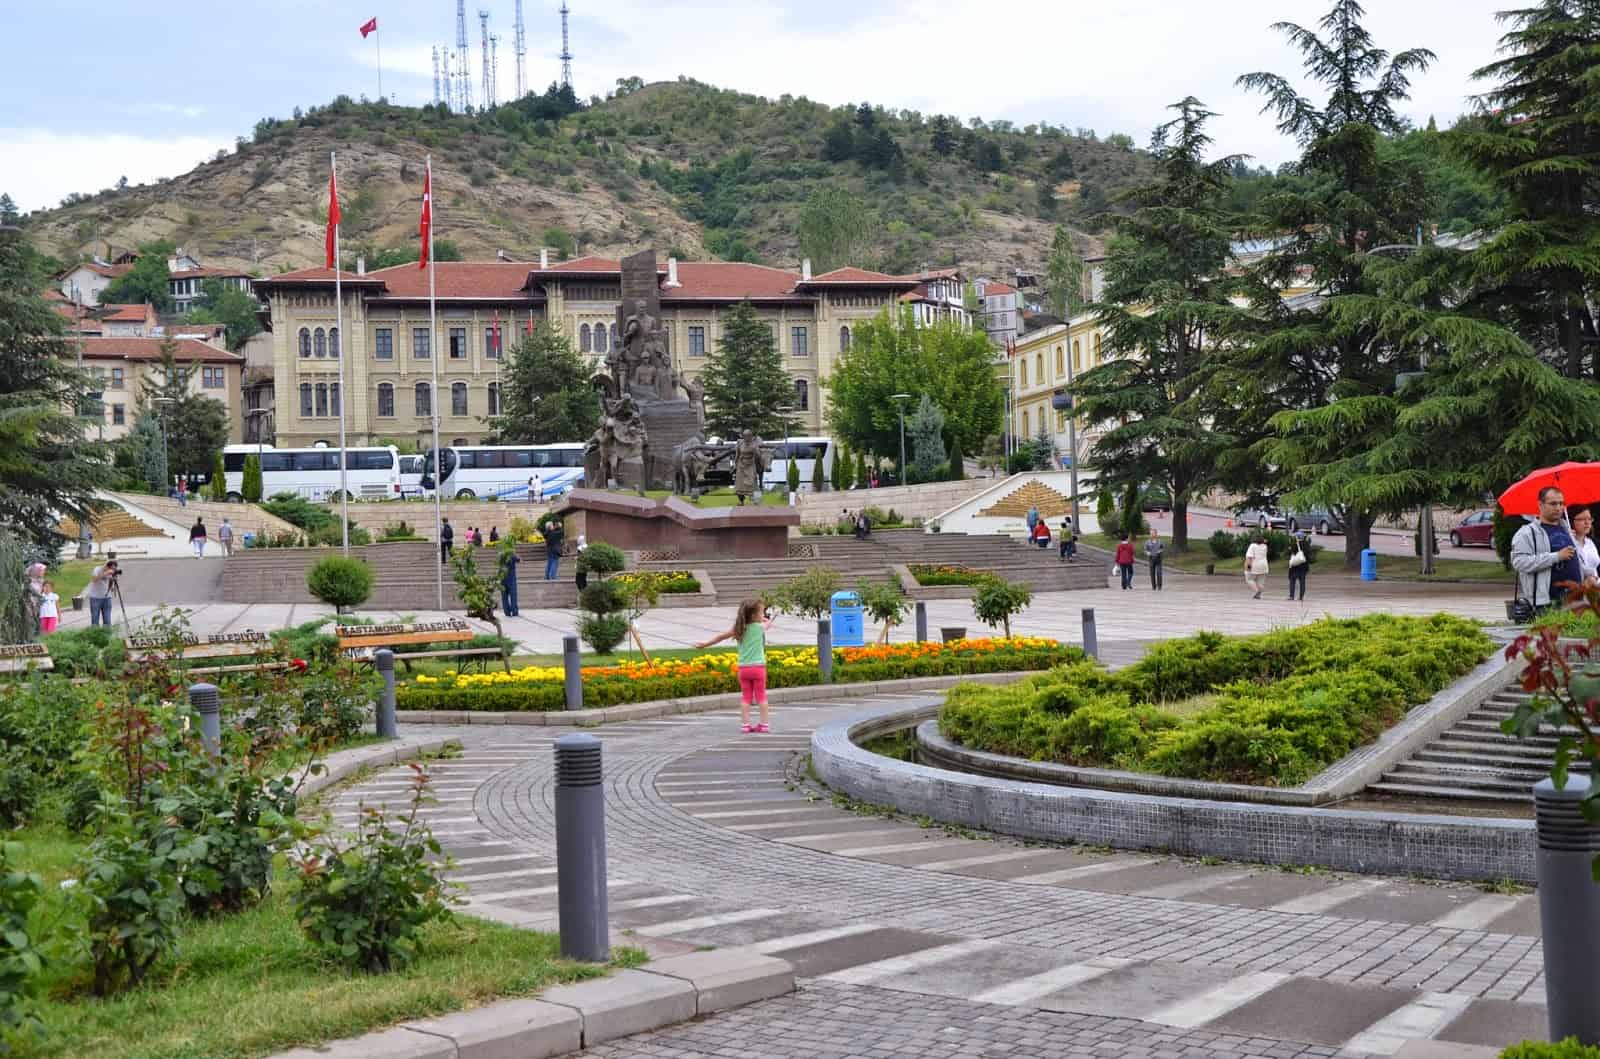 Kastamonu Valiliği and Cumhuriyet Meydanı in Kastamonu, Turkey